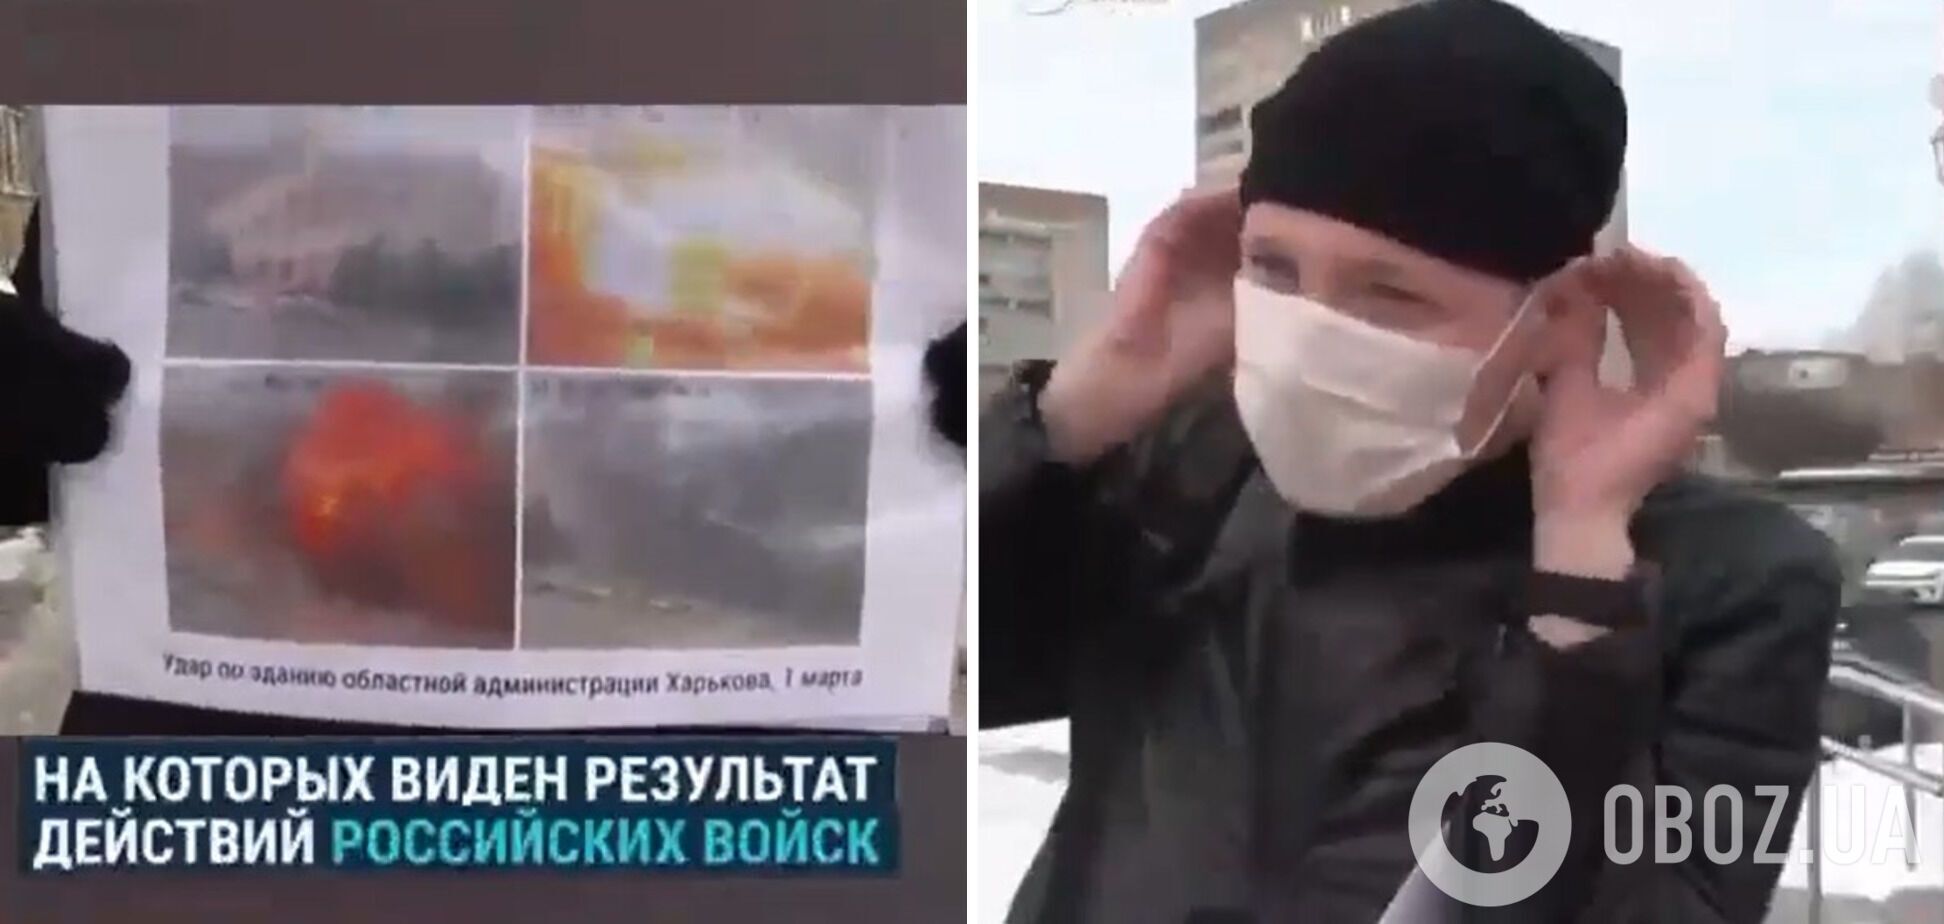 Увидев фото разрушенных войсками РФ украинских городов, россияне разворачивались и уходили